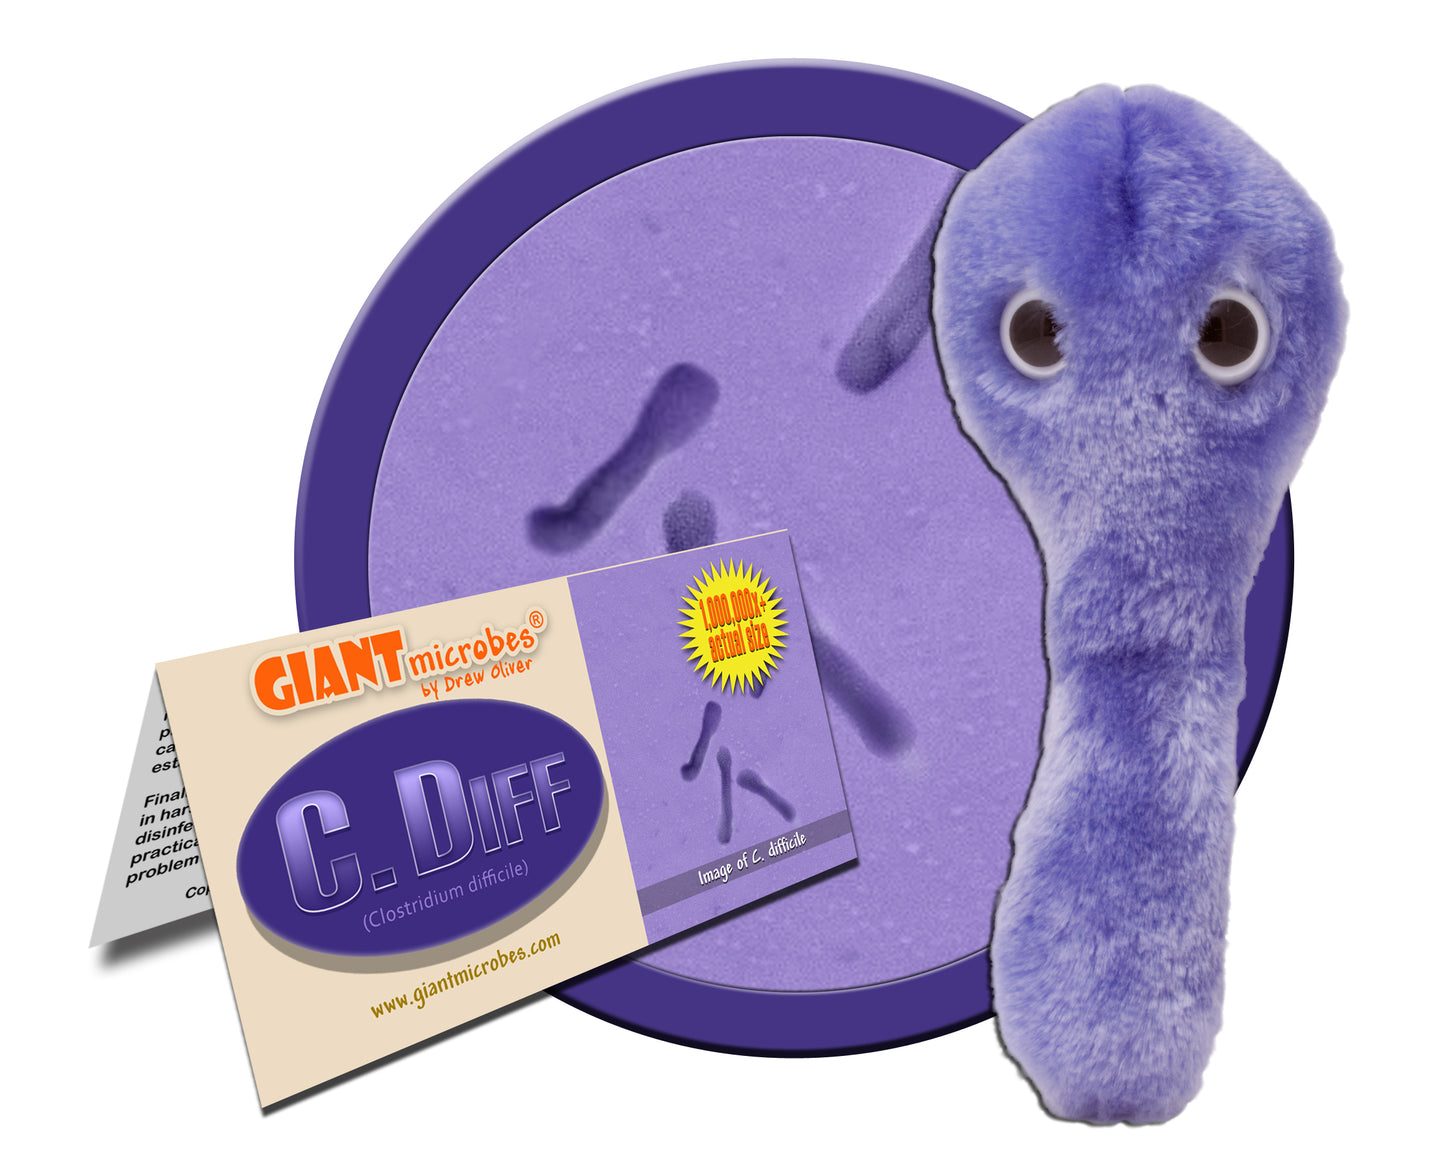 C. Diff (Clostridium Difficile)